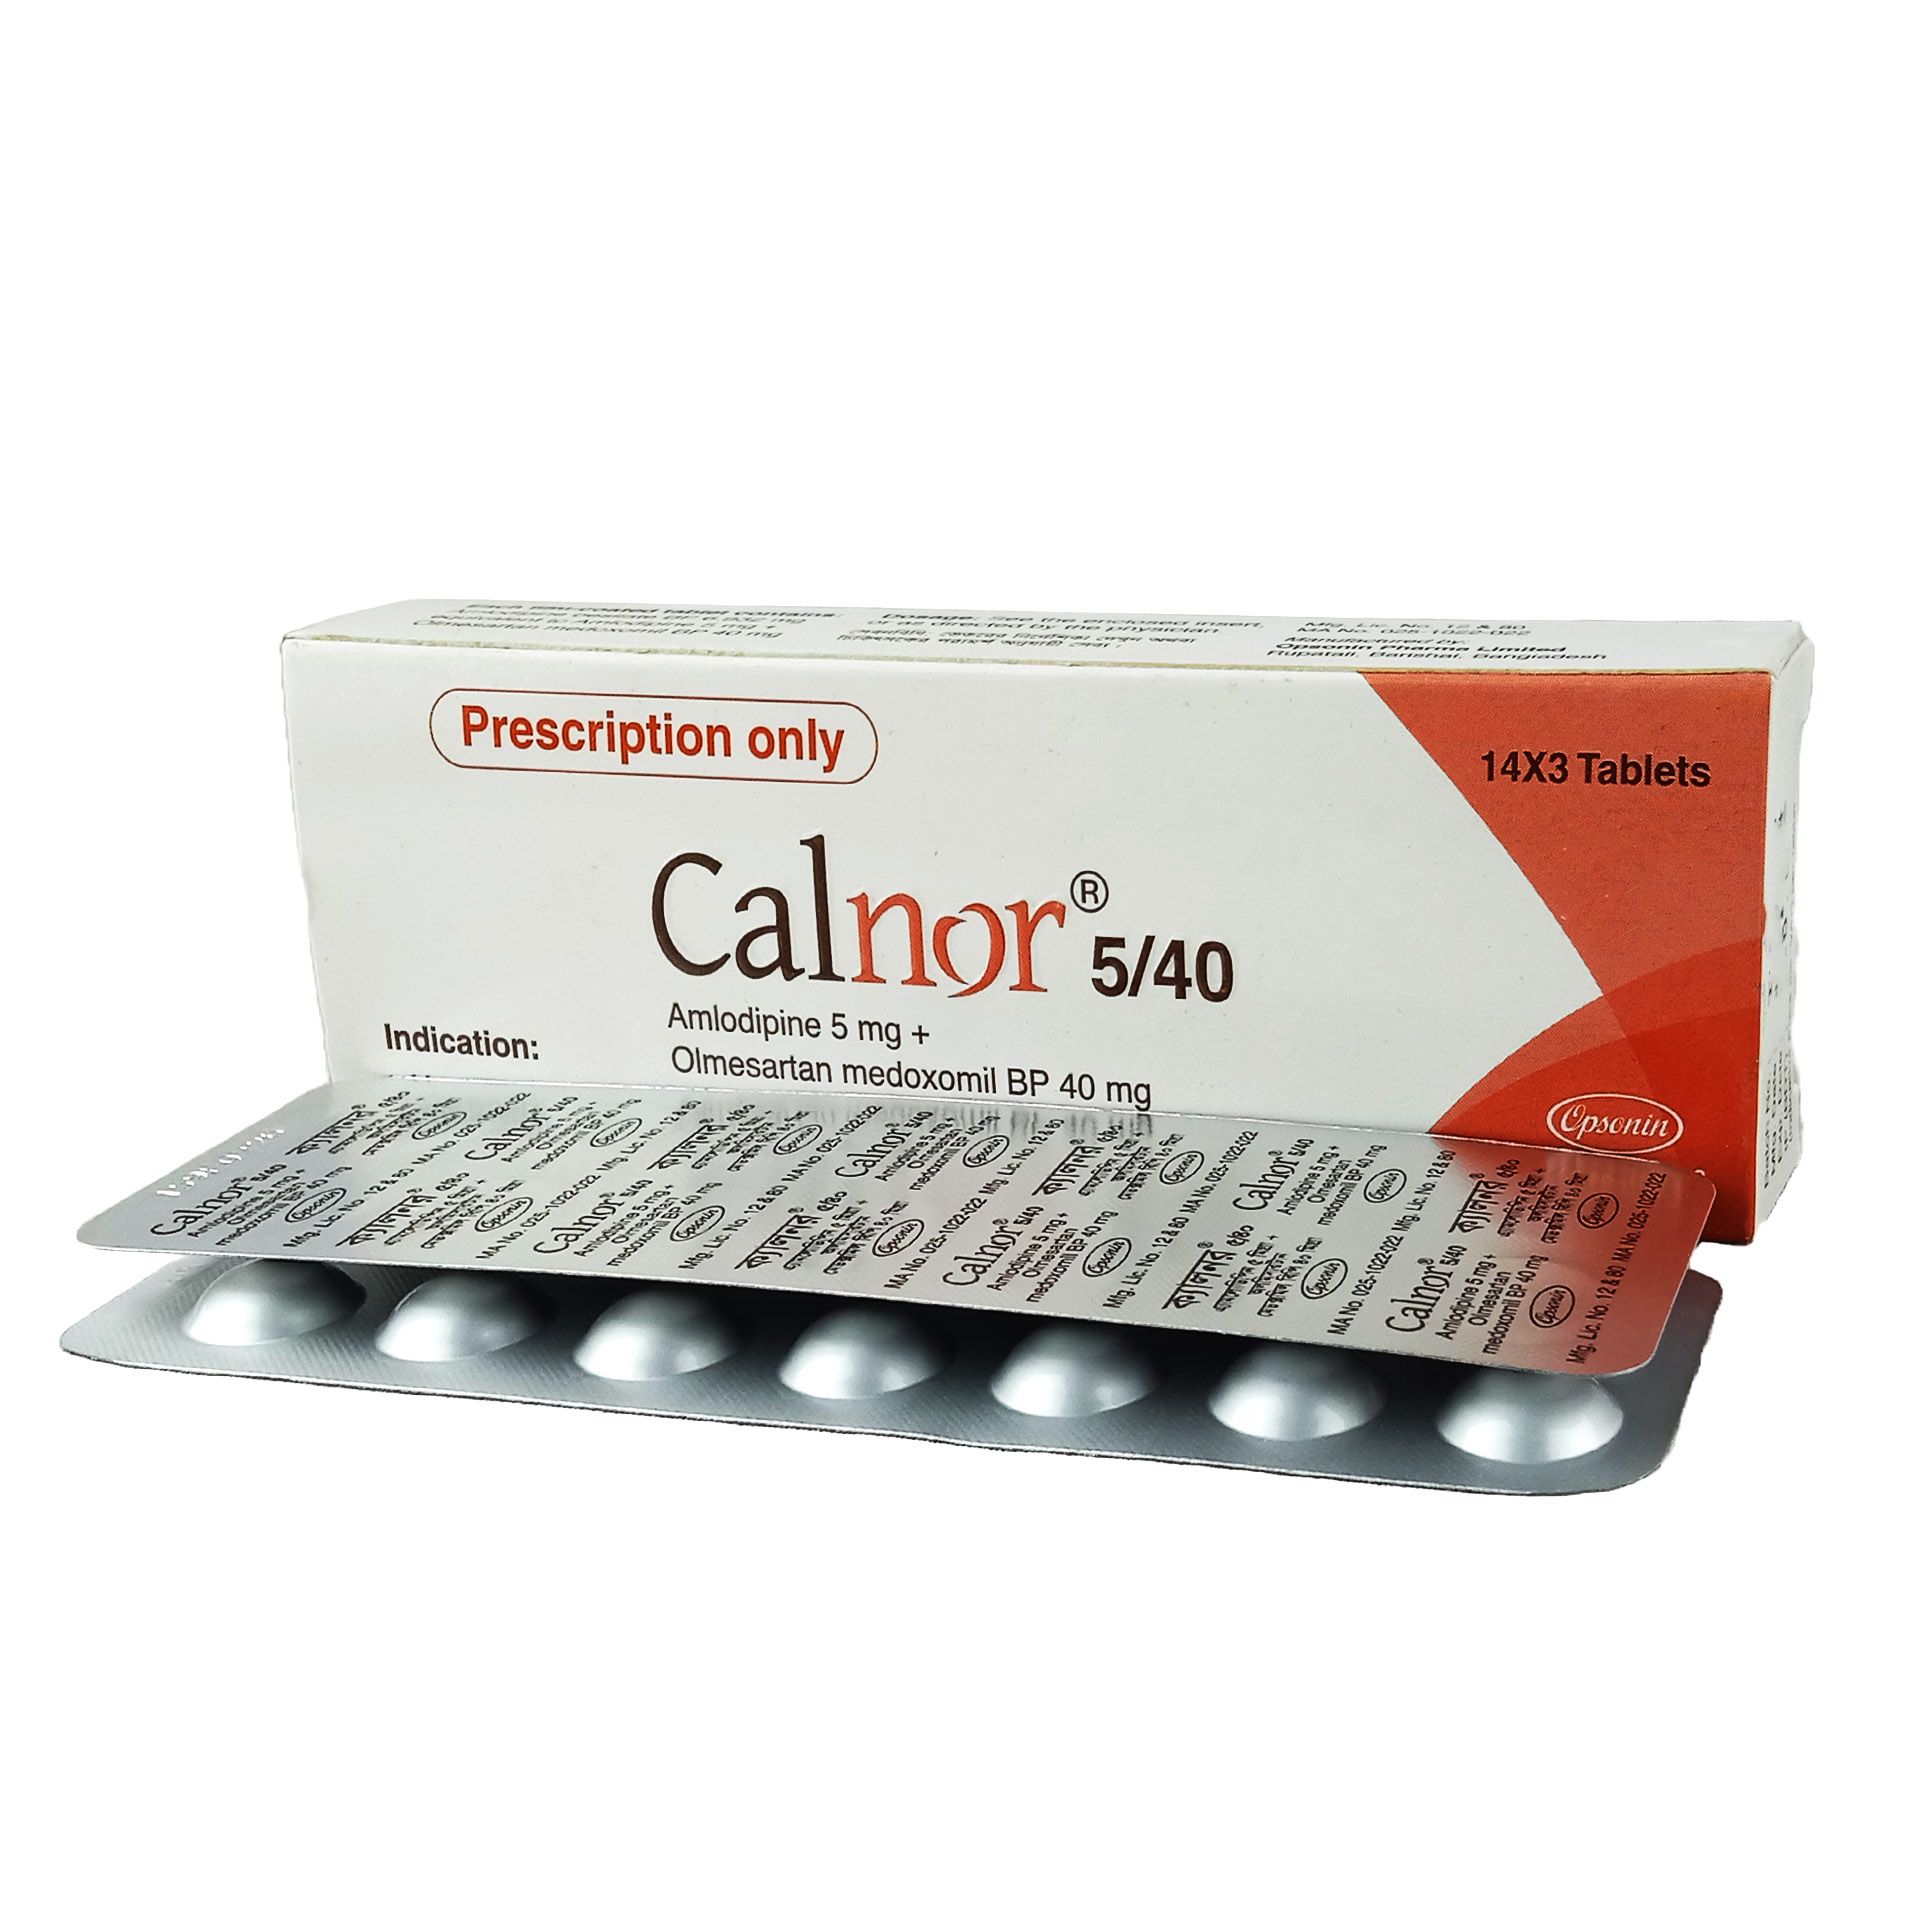 Calnor 5/40 5mg+40mg Tablet